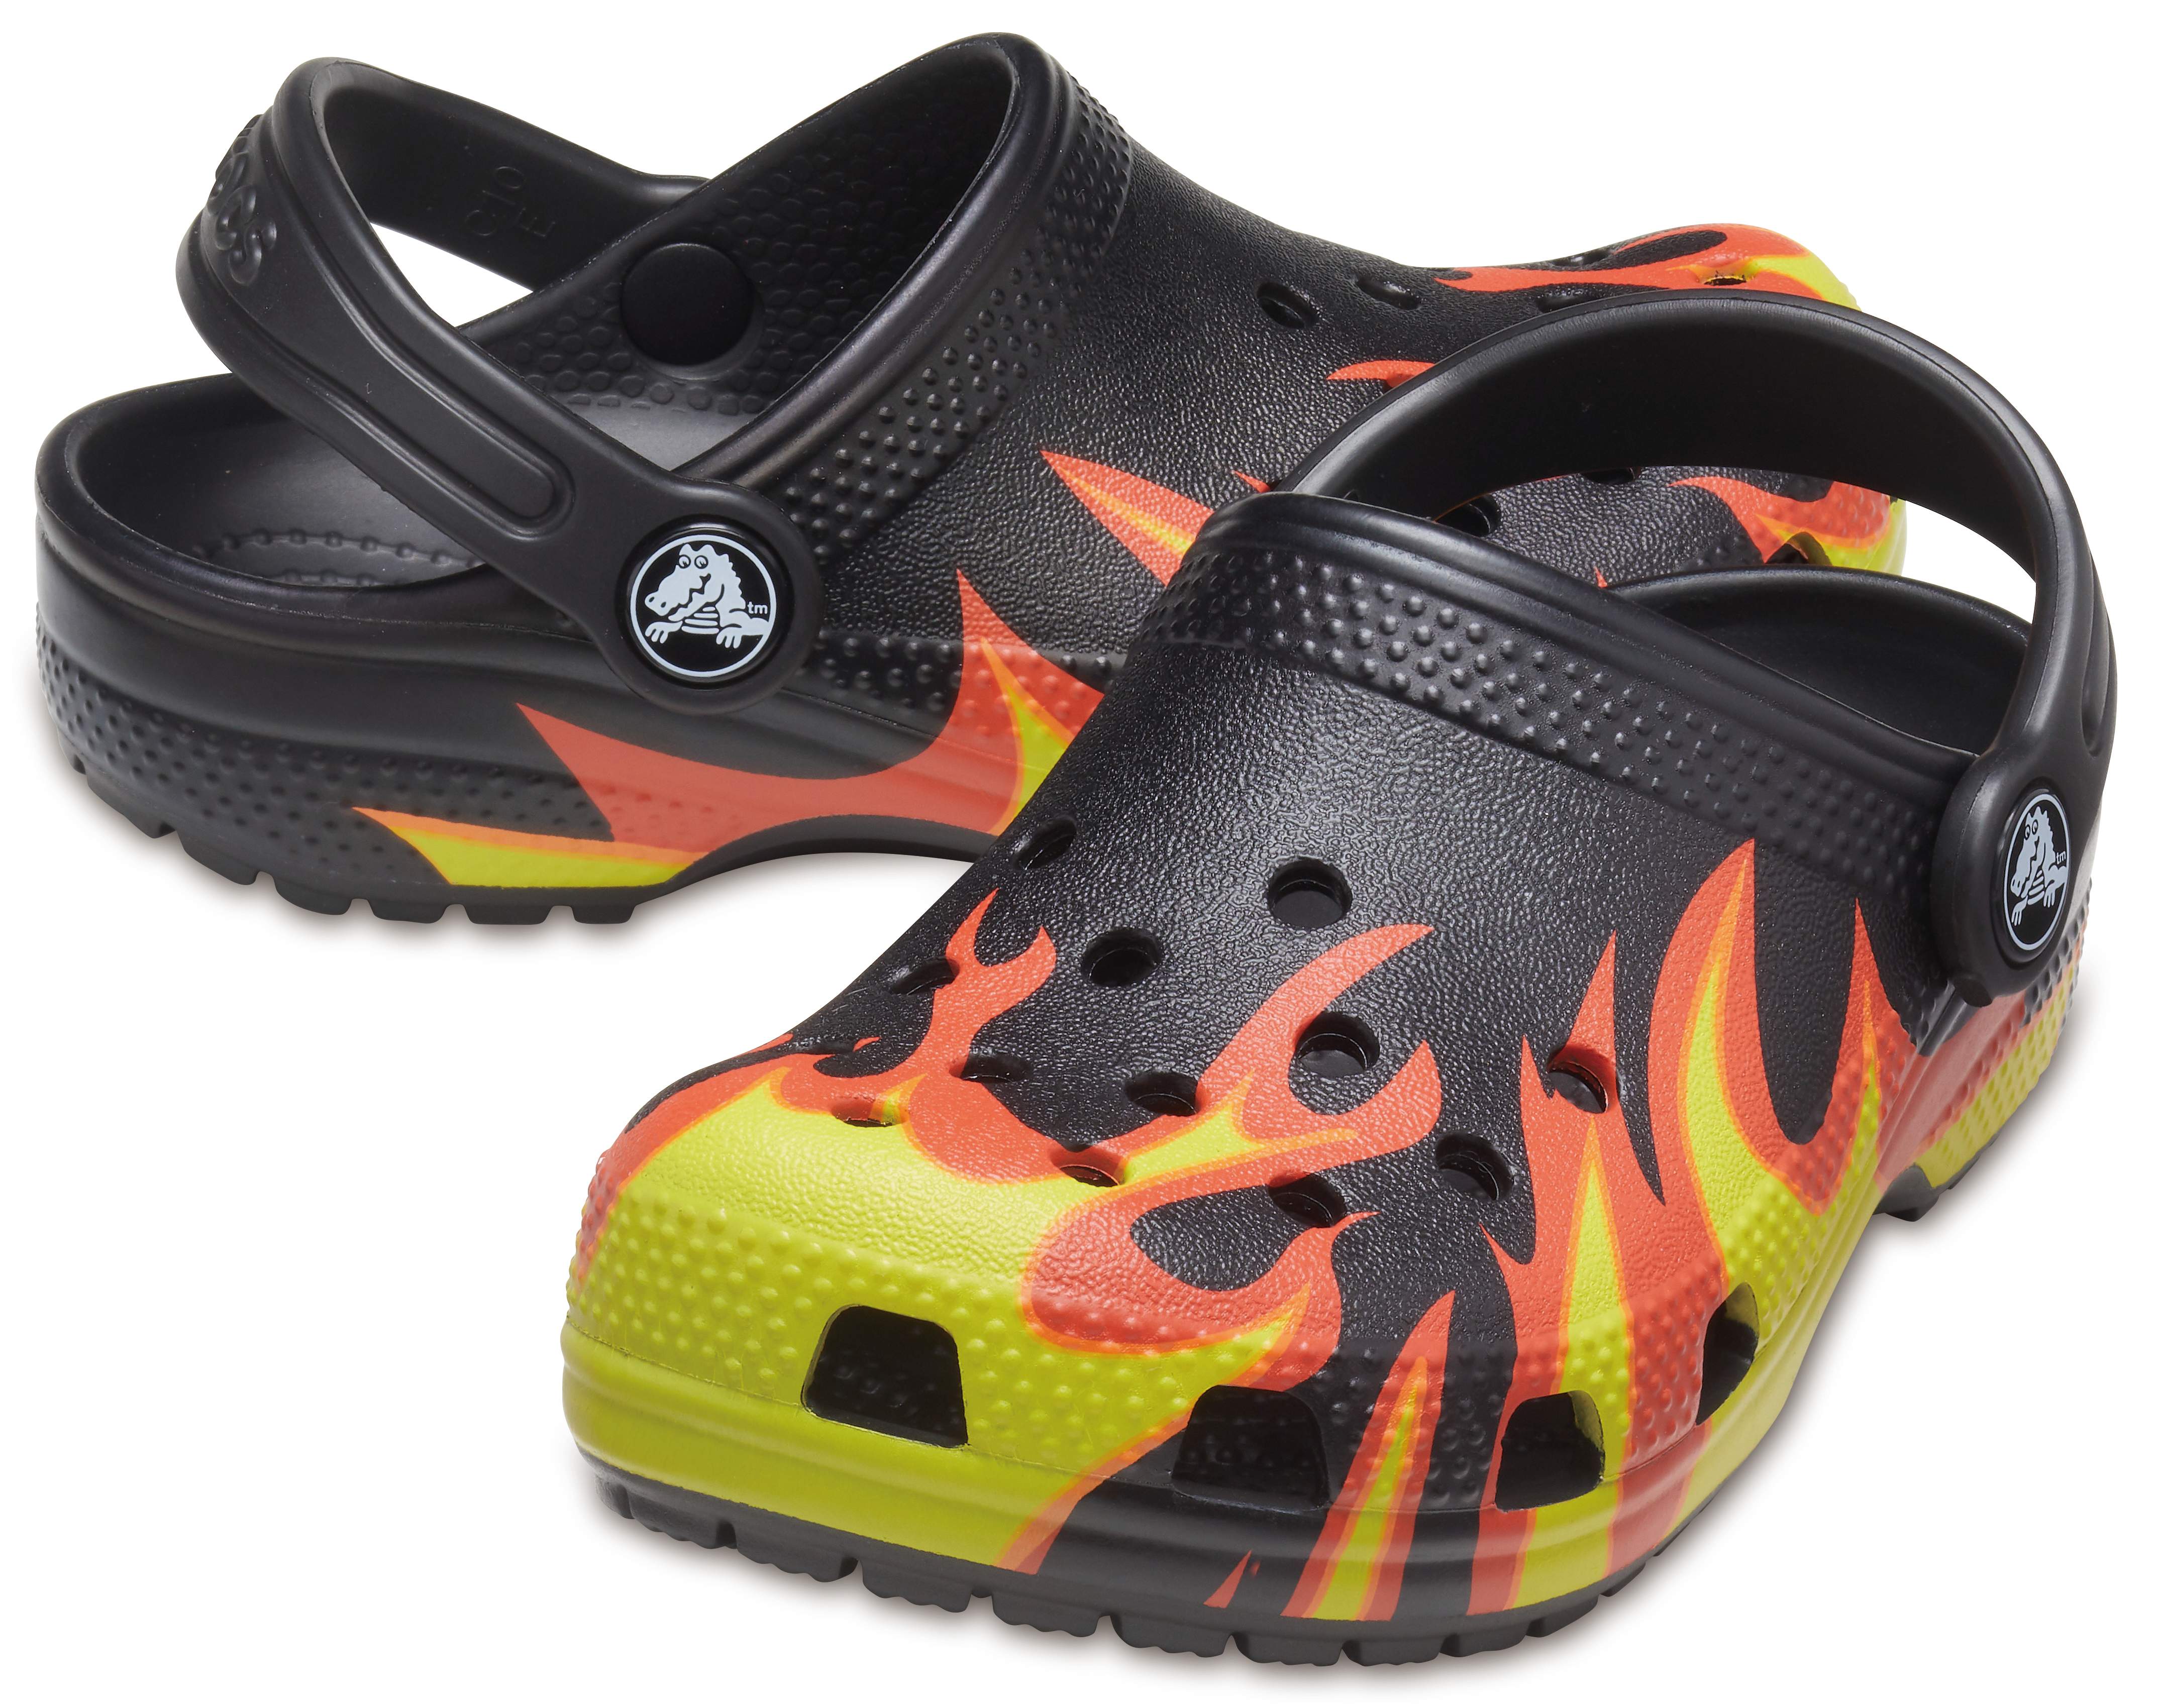 crocs flames